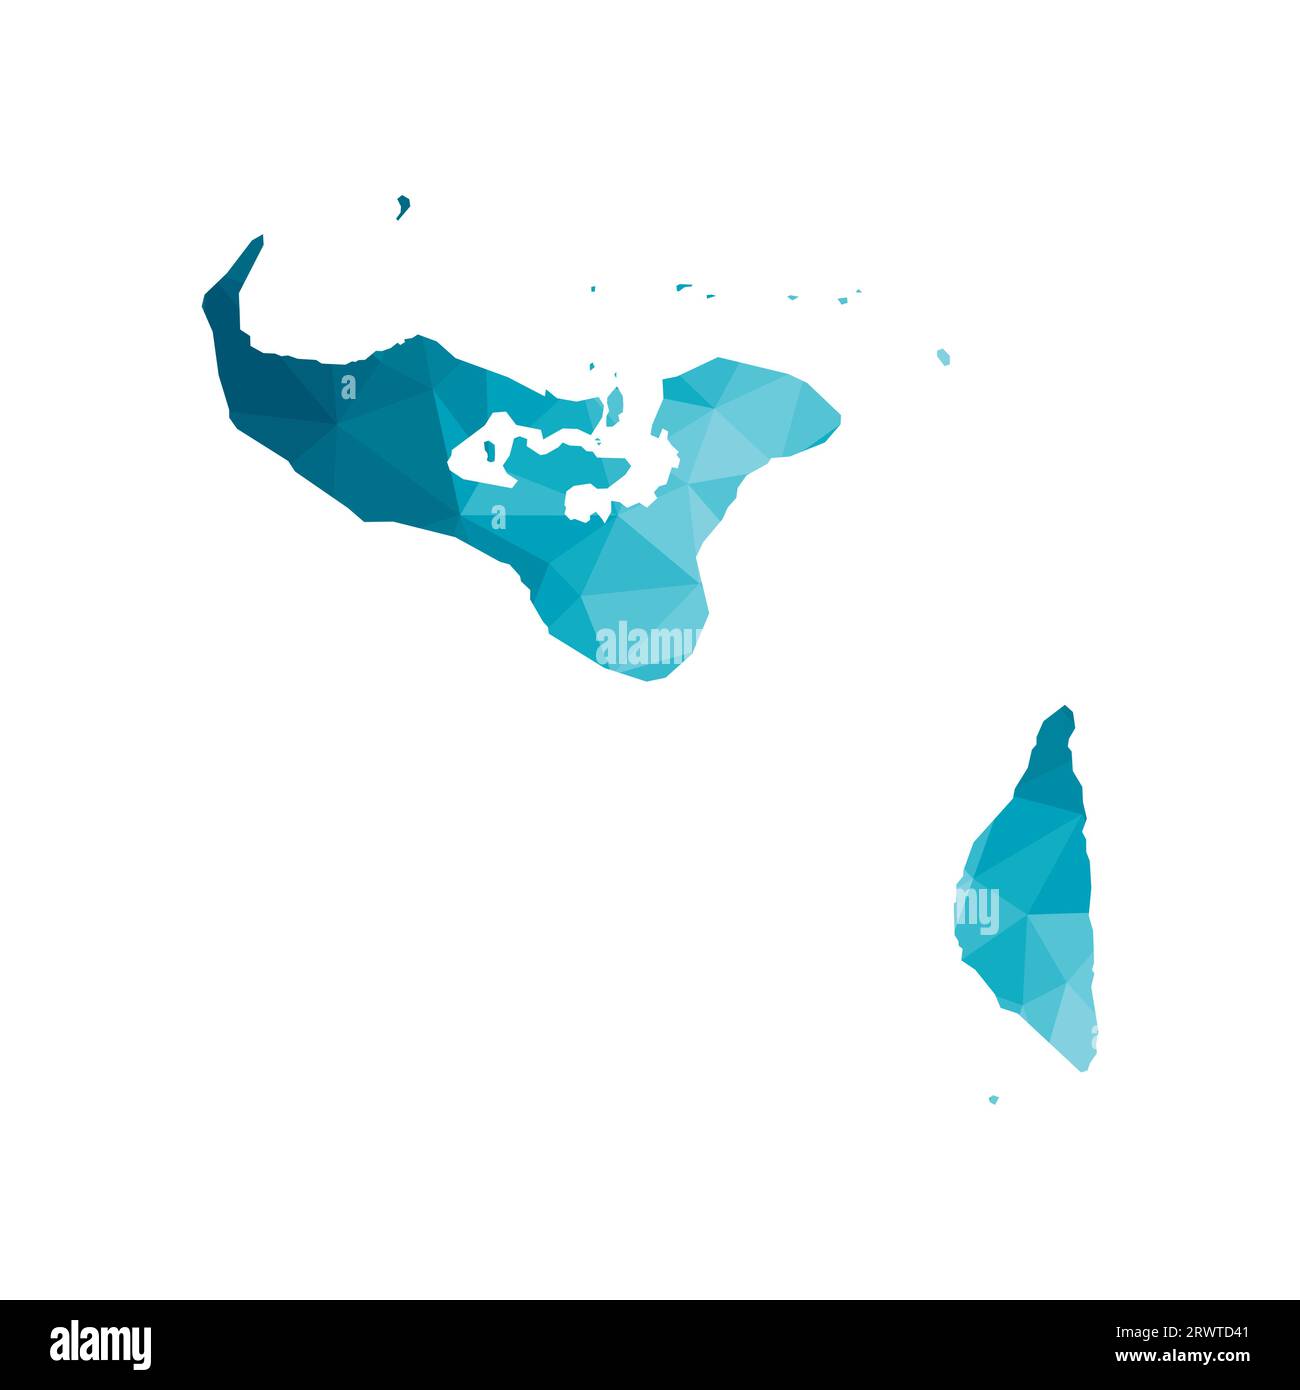 Vektor isolierte Illustration Symbol mit vereinfachter blauer Silhouette des Königreichs Tonga Karte. Polygonaler geometrischer Stil, dreieckige Formen. Weißes Backgro Stock Vektor